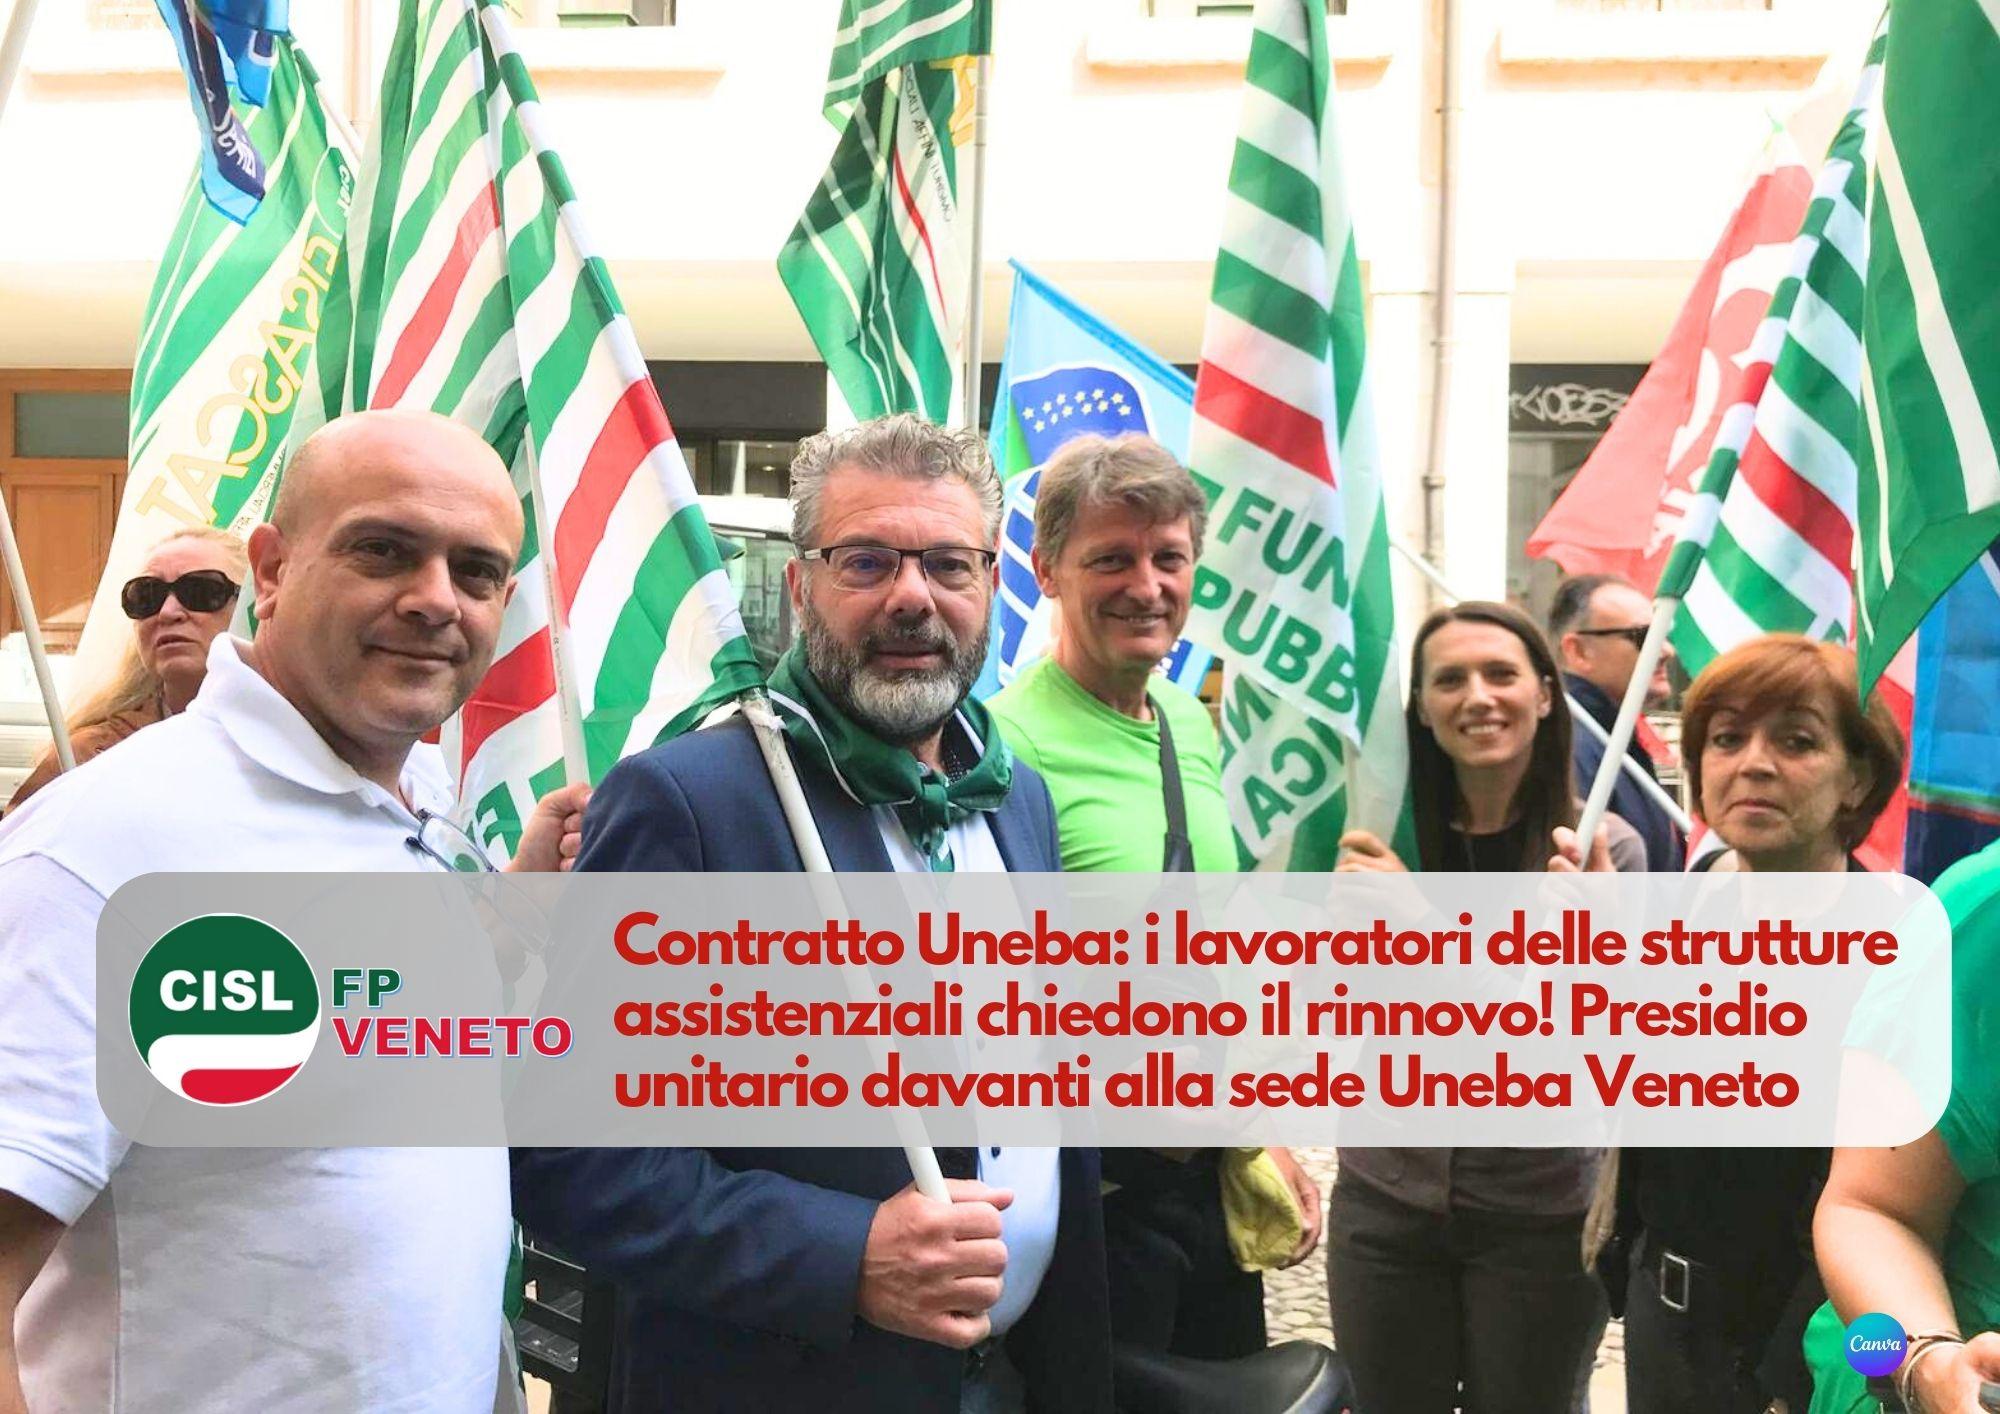 CISL FP Veneto. Contratto Uneba: i lavoratori delle strutture assistenziali chiedono il rinnovo!